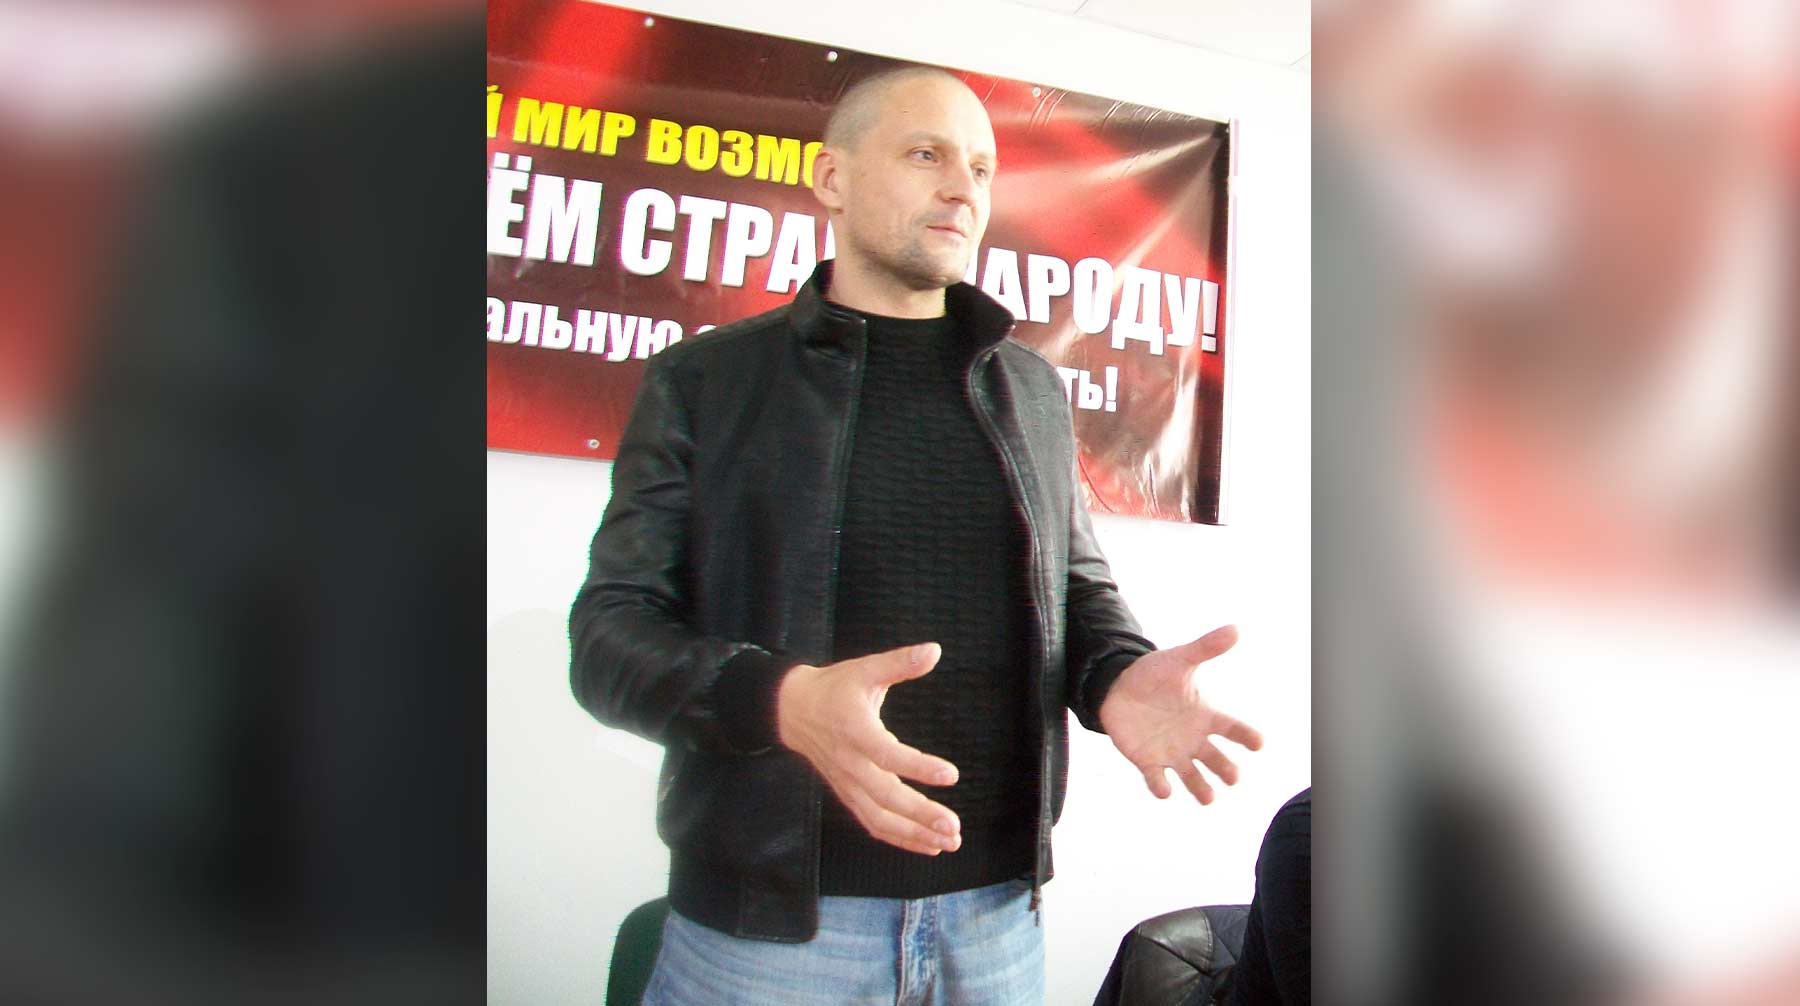 Теперь активисту придется четыре раза в месяц отмечаться в полиции и не выходить на массовые акции Сергей Удальцов